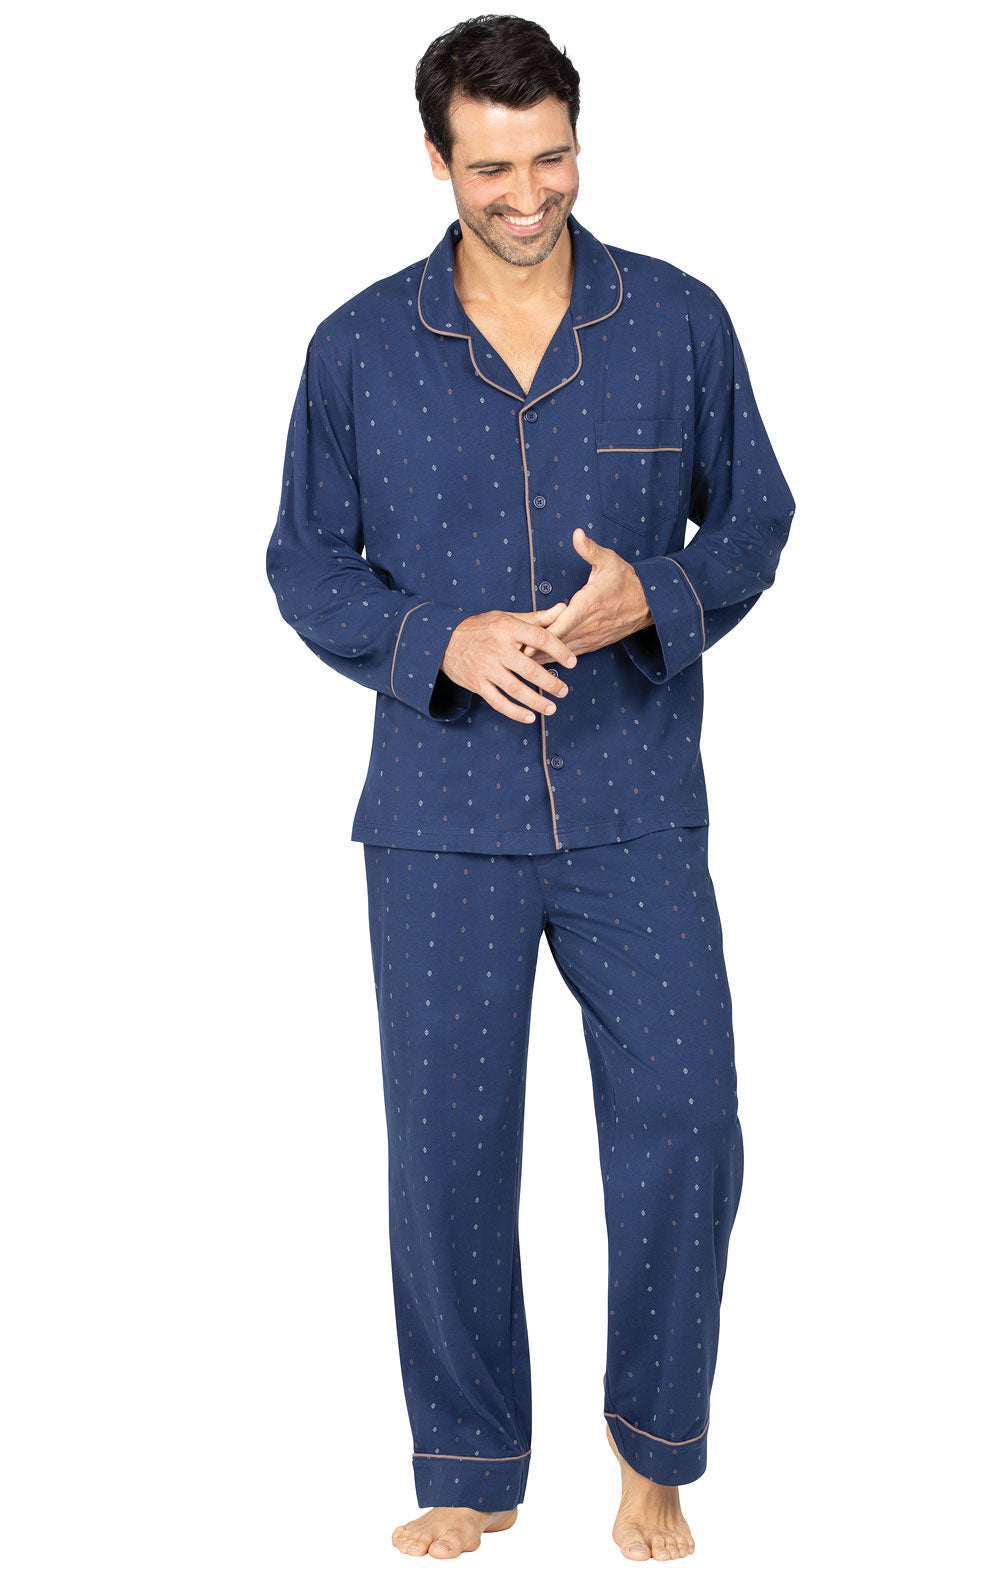 Geo-Printed Men's Pajamas